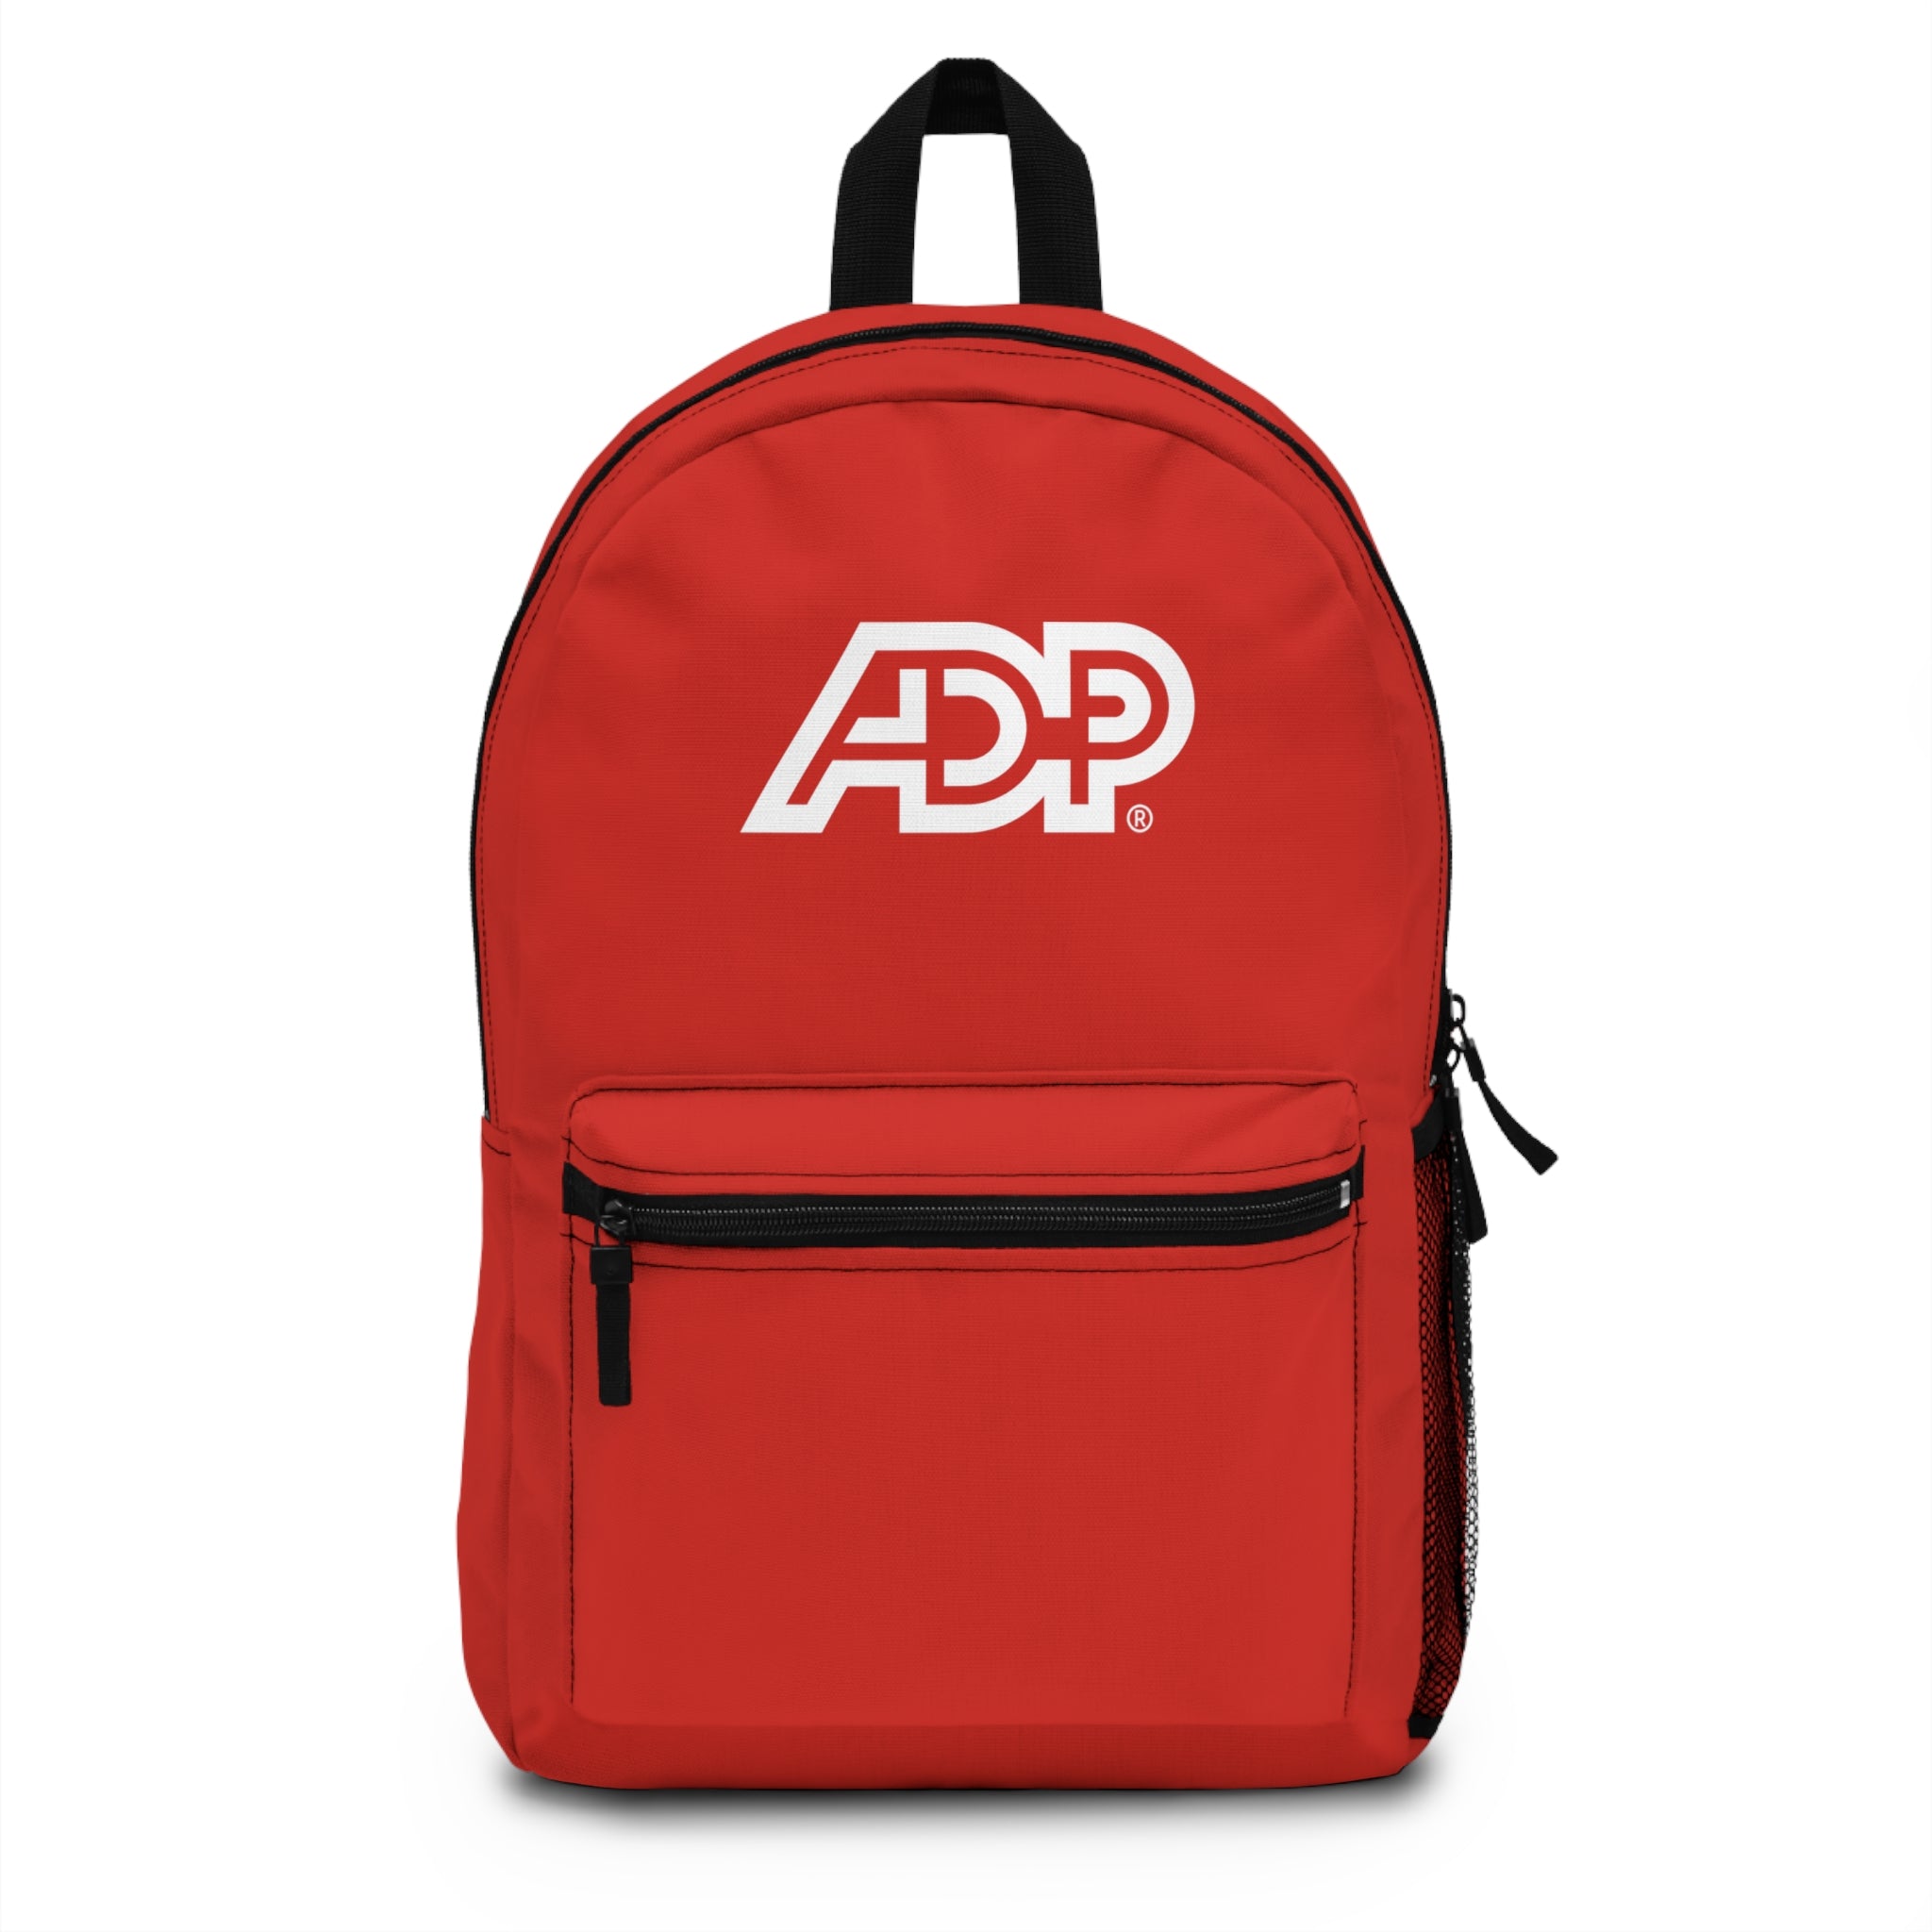 ADP Backpack